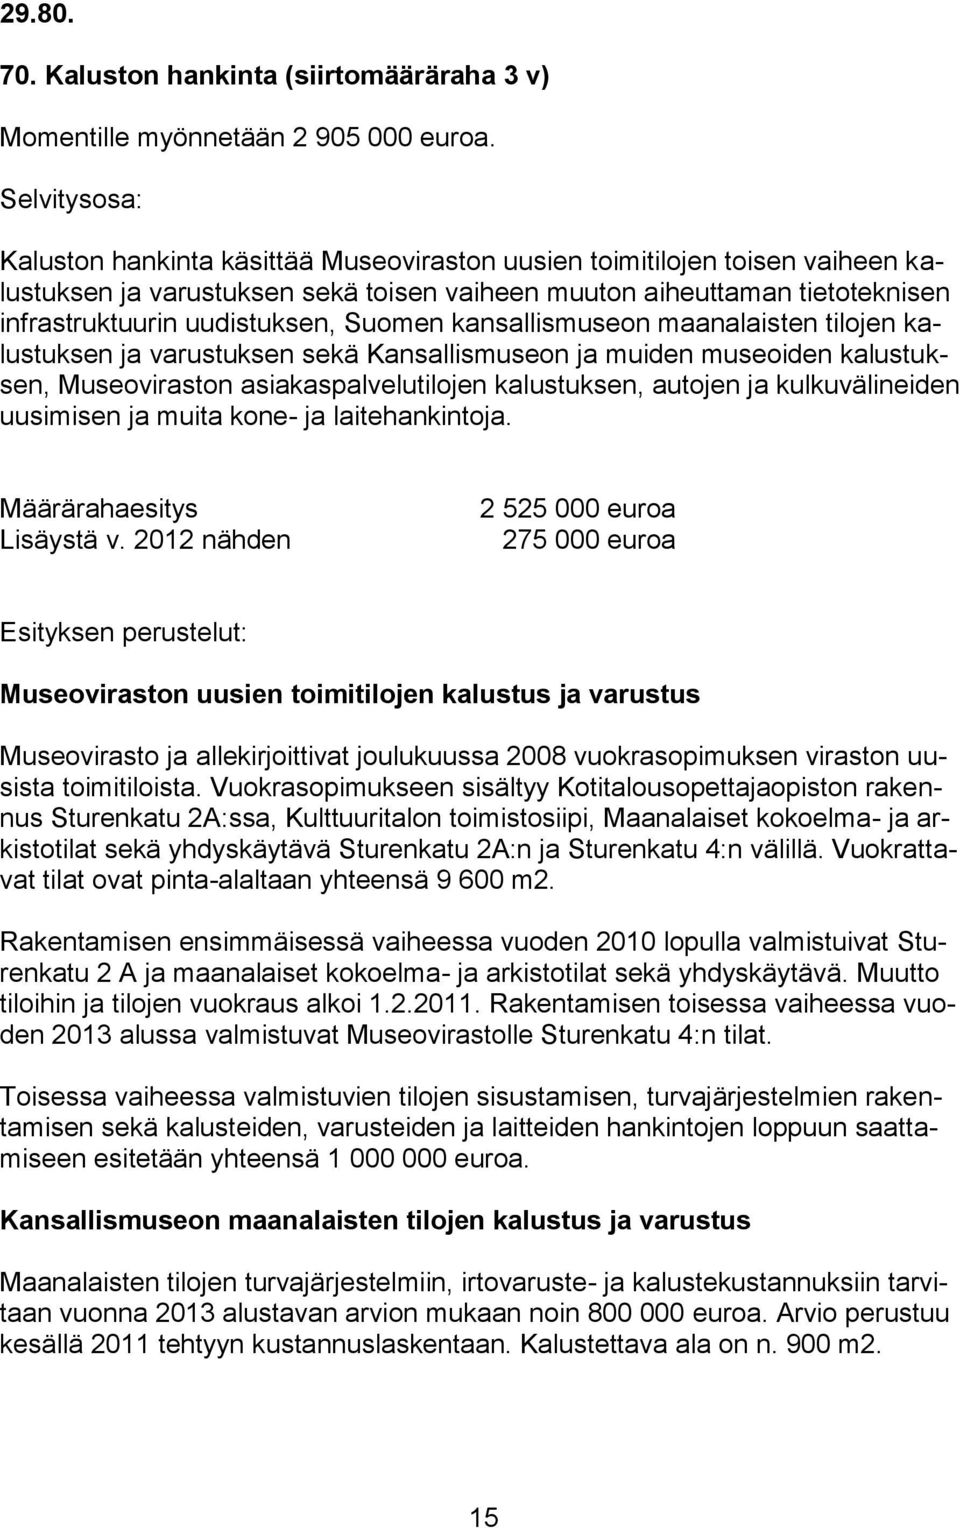 Suomen kansallismuseon maanalaisten tilojen kalustuksen ja varustuksen sekä Kansallismuseon ja muiden museoiden kalustuksen, Museoviraston asiakaspalvelutilojen kalustuksen, autojen ja